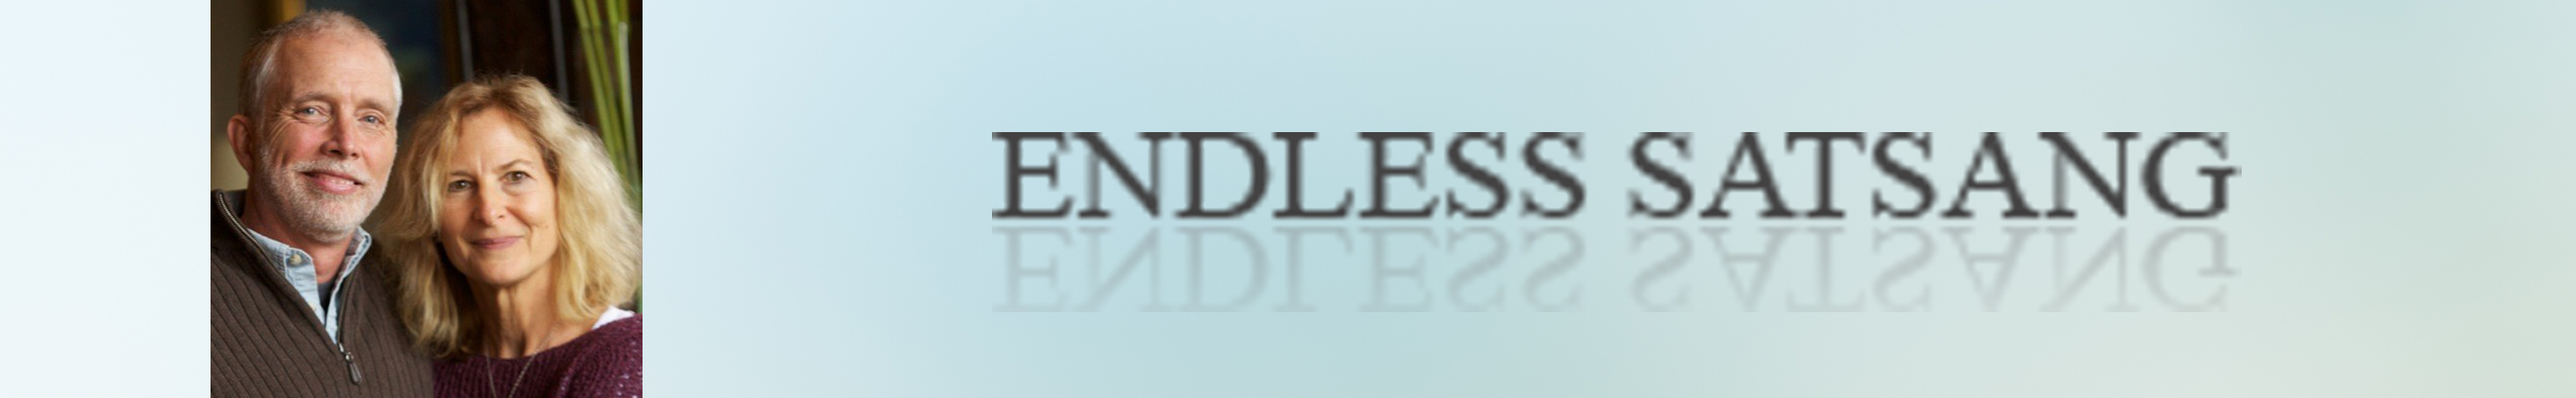 Endless Satsang Foundation, Inc. logo